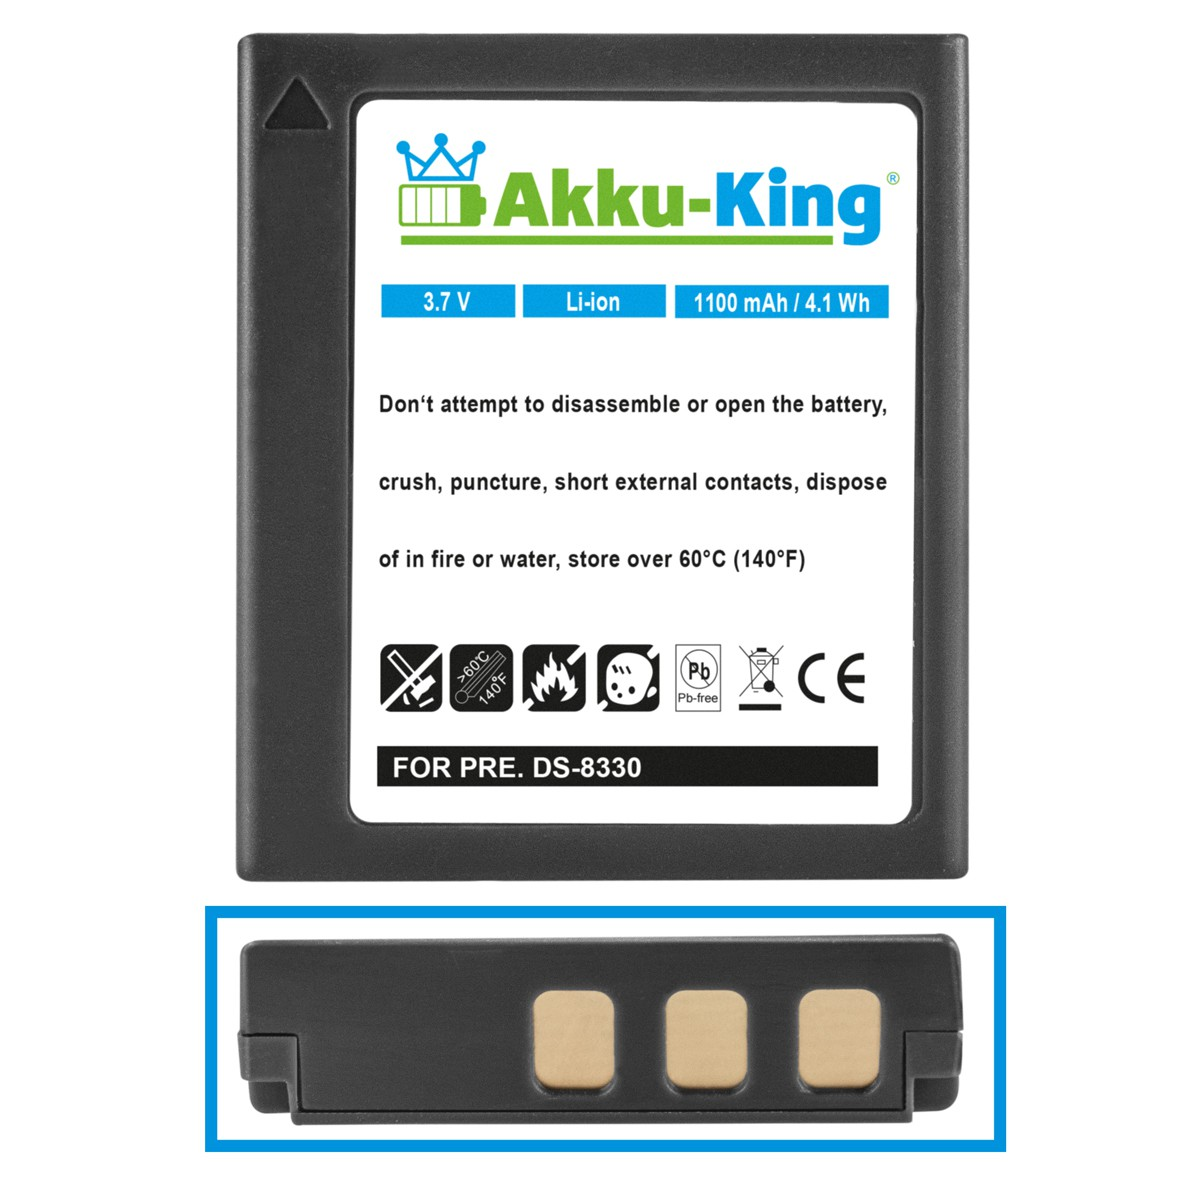 mit AKKU-KING Medion 3.7 DC-8300 Kamera-Akku, Akku 1100mAh kompatibel Li-Ion Volt,